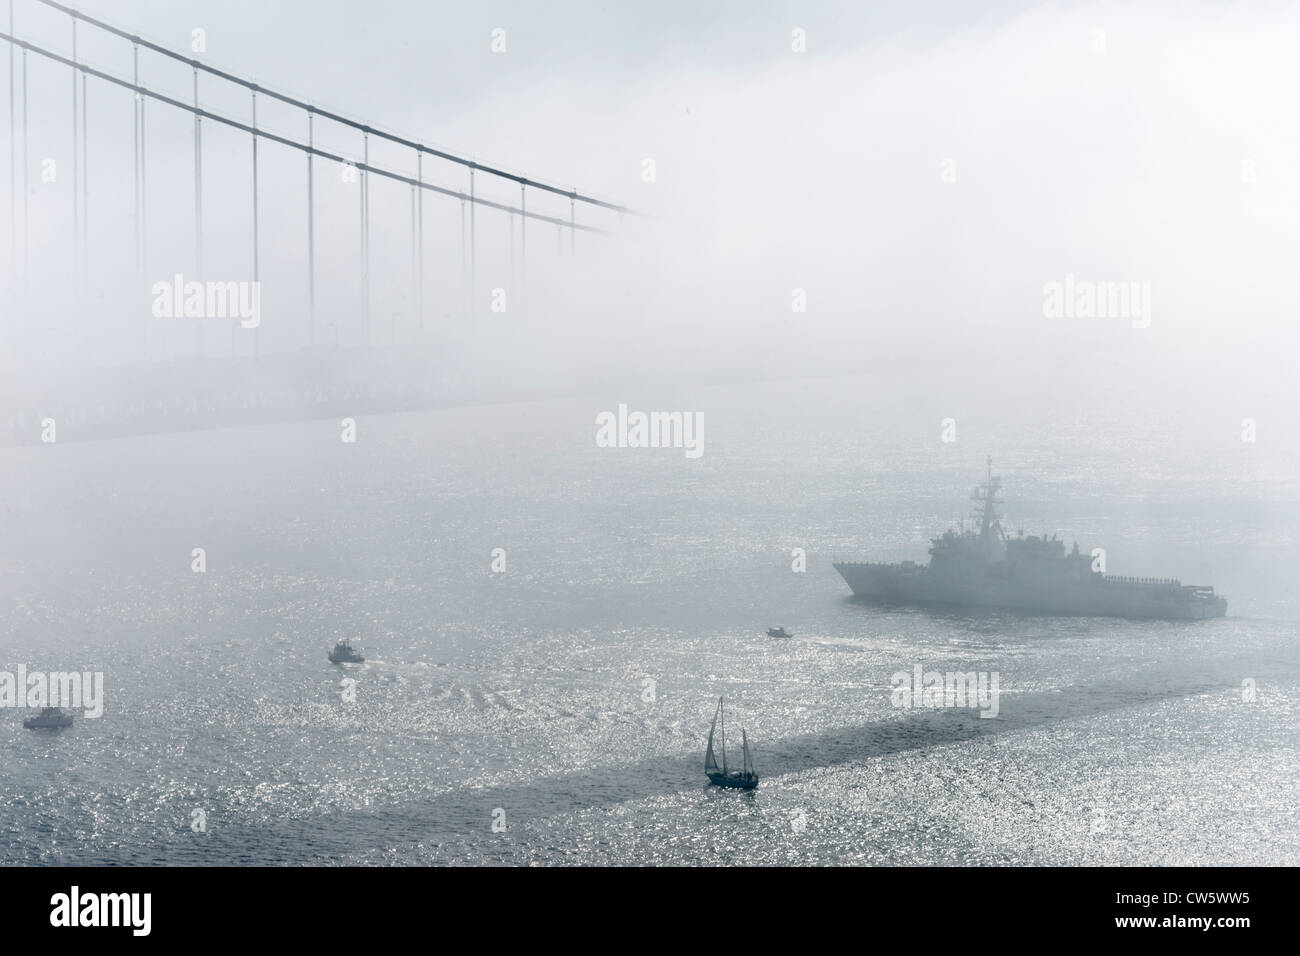 La Semaine de la flotte au Golden Gate Bridge, San Francisco, Californie. La Marine et de l'affiche. L'industrie de la navigation sous le pont dans le brouillard. Banque D'Images